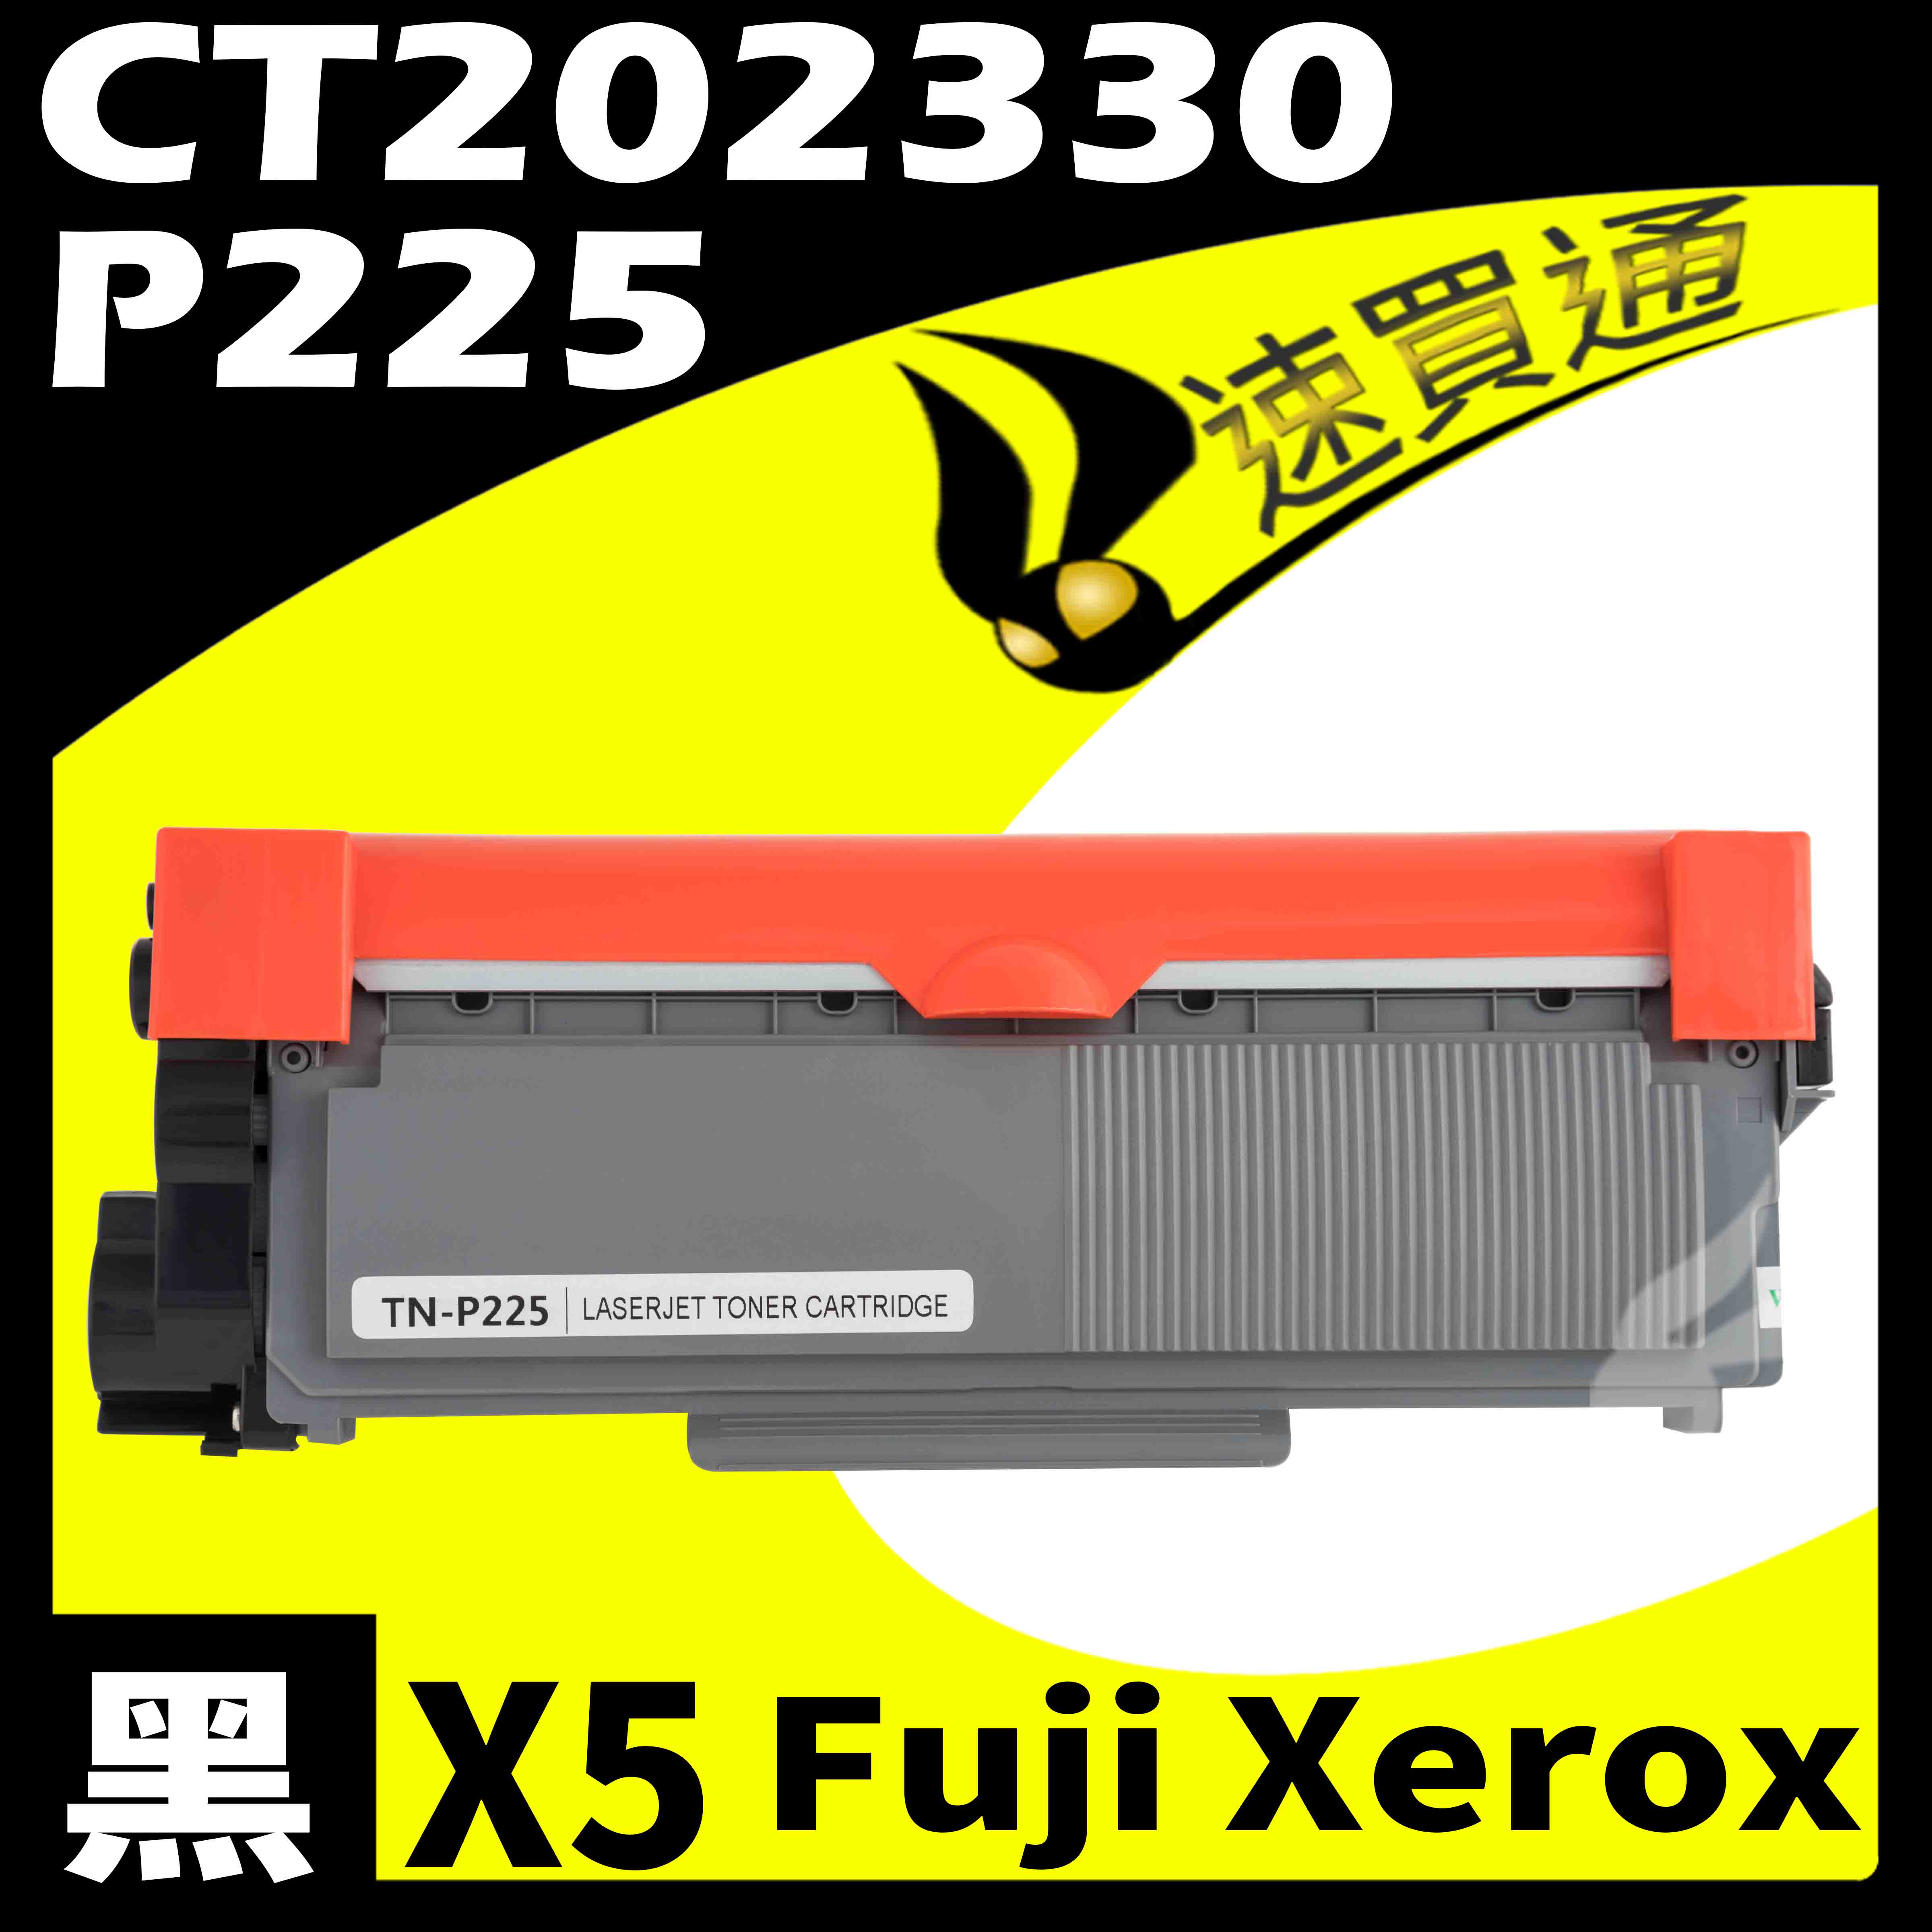 【速買通】超值5件組 Fuji Xerox P225/CT202330 相容碳粉匣